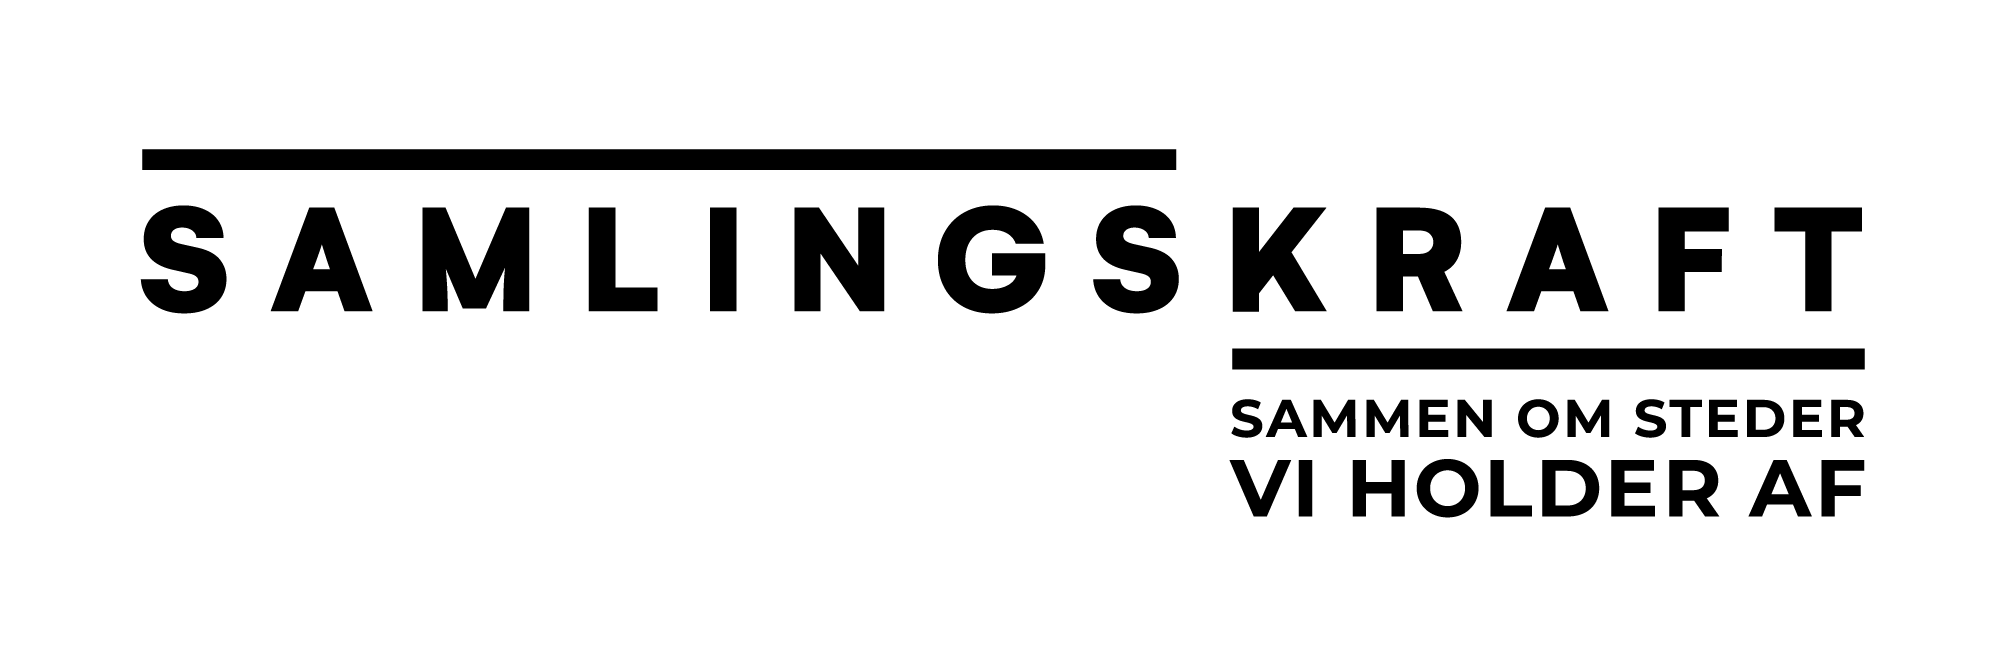 Samlingskraft logo sort 2000 px transparent baggrund 002